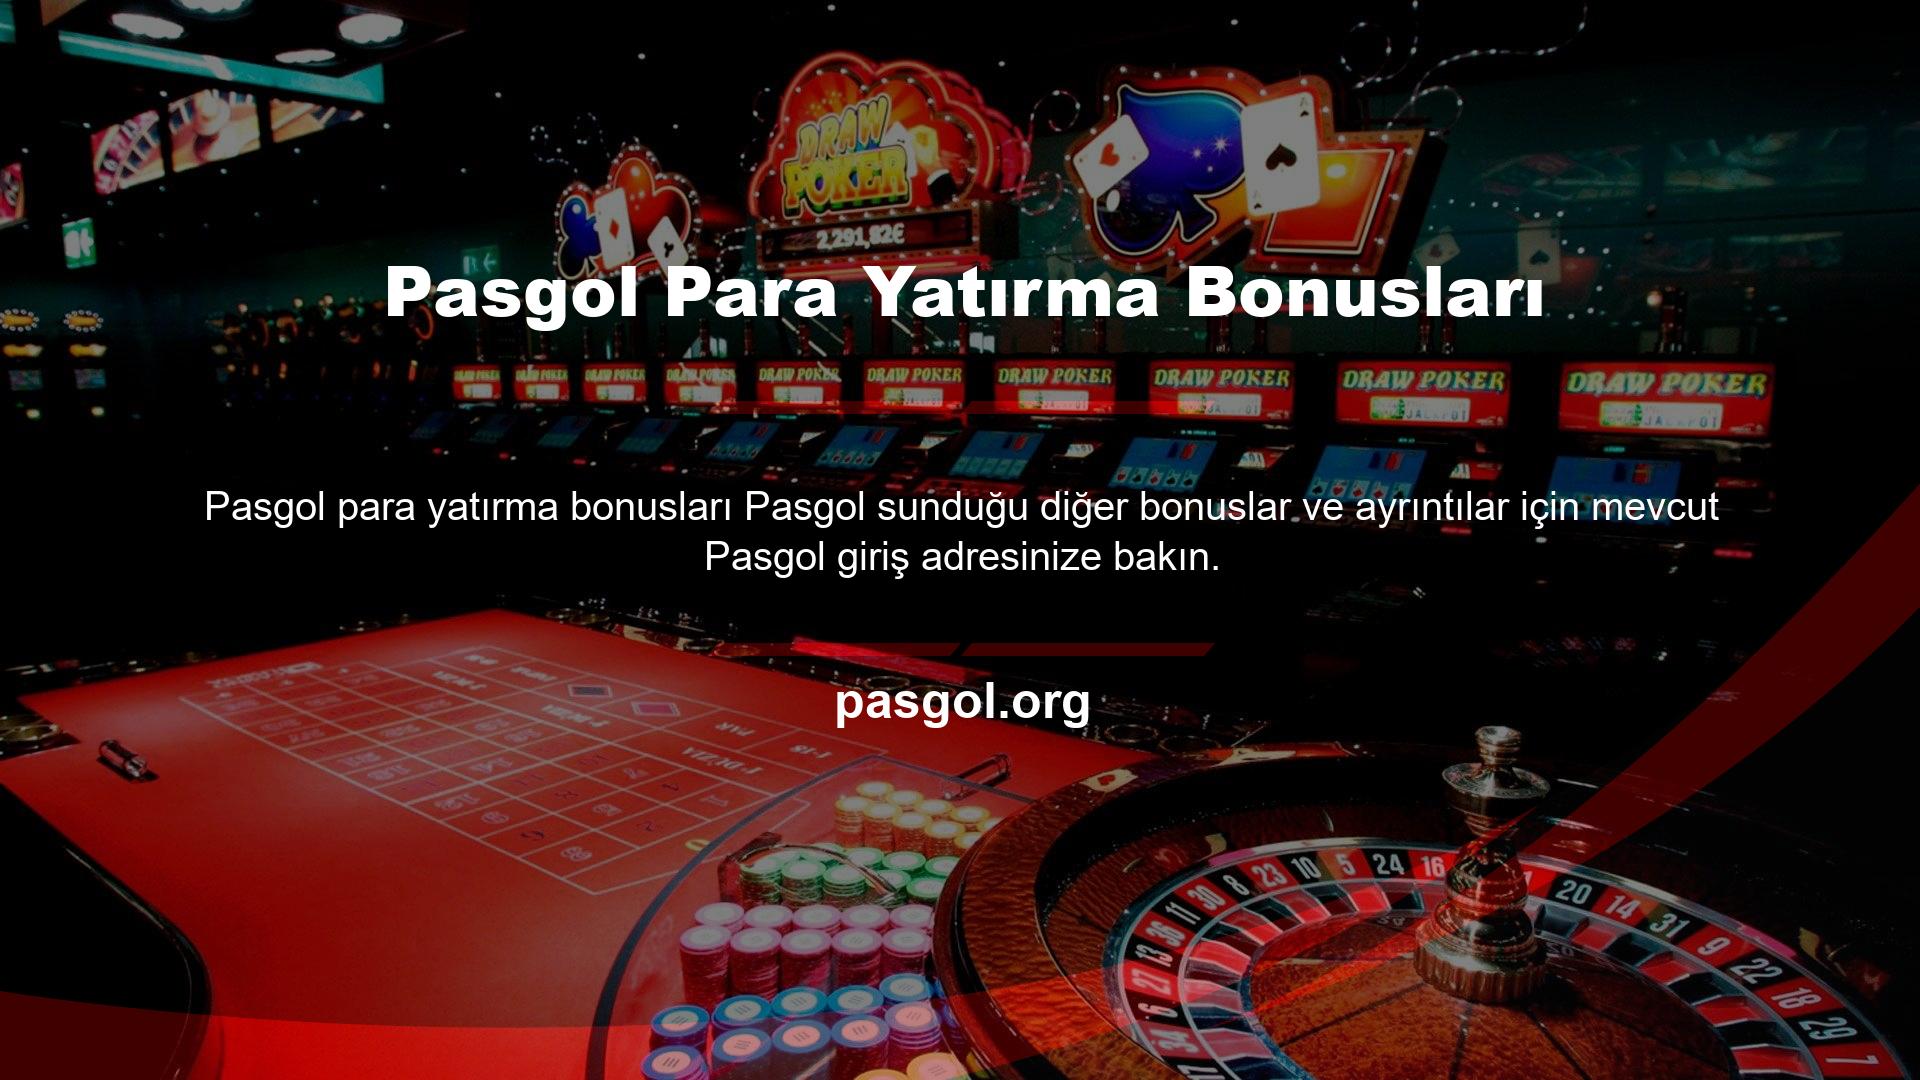 Bonus talepleri Pasgol çevrimiçi destek hattı aracılığıyla yapılabilir